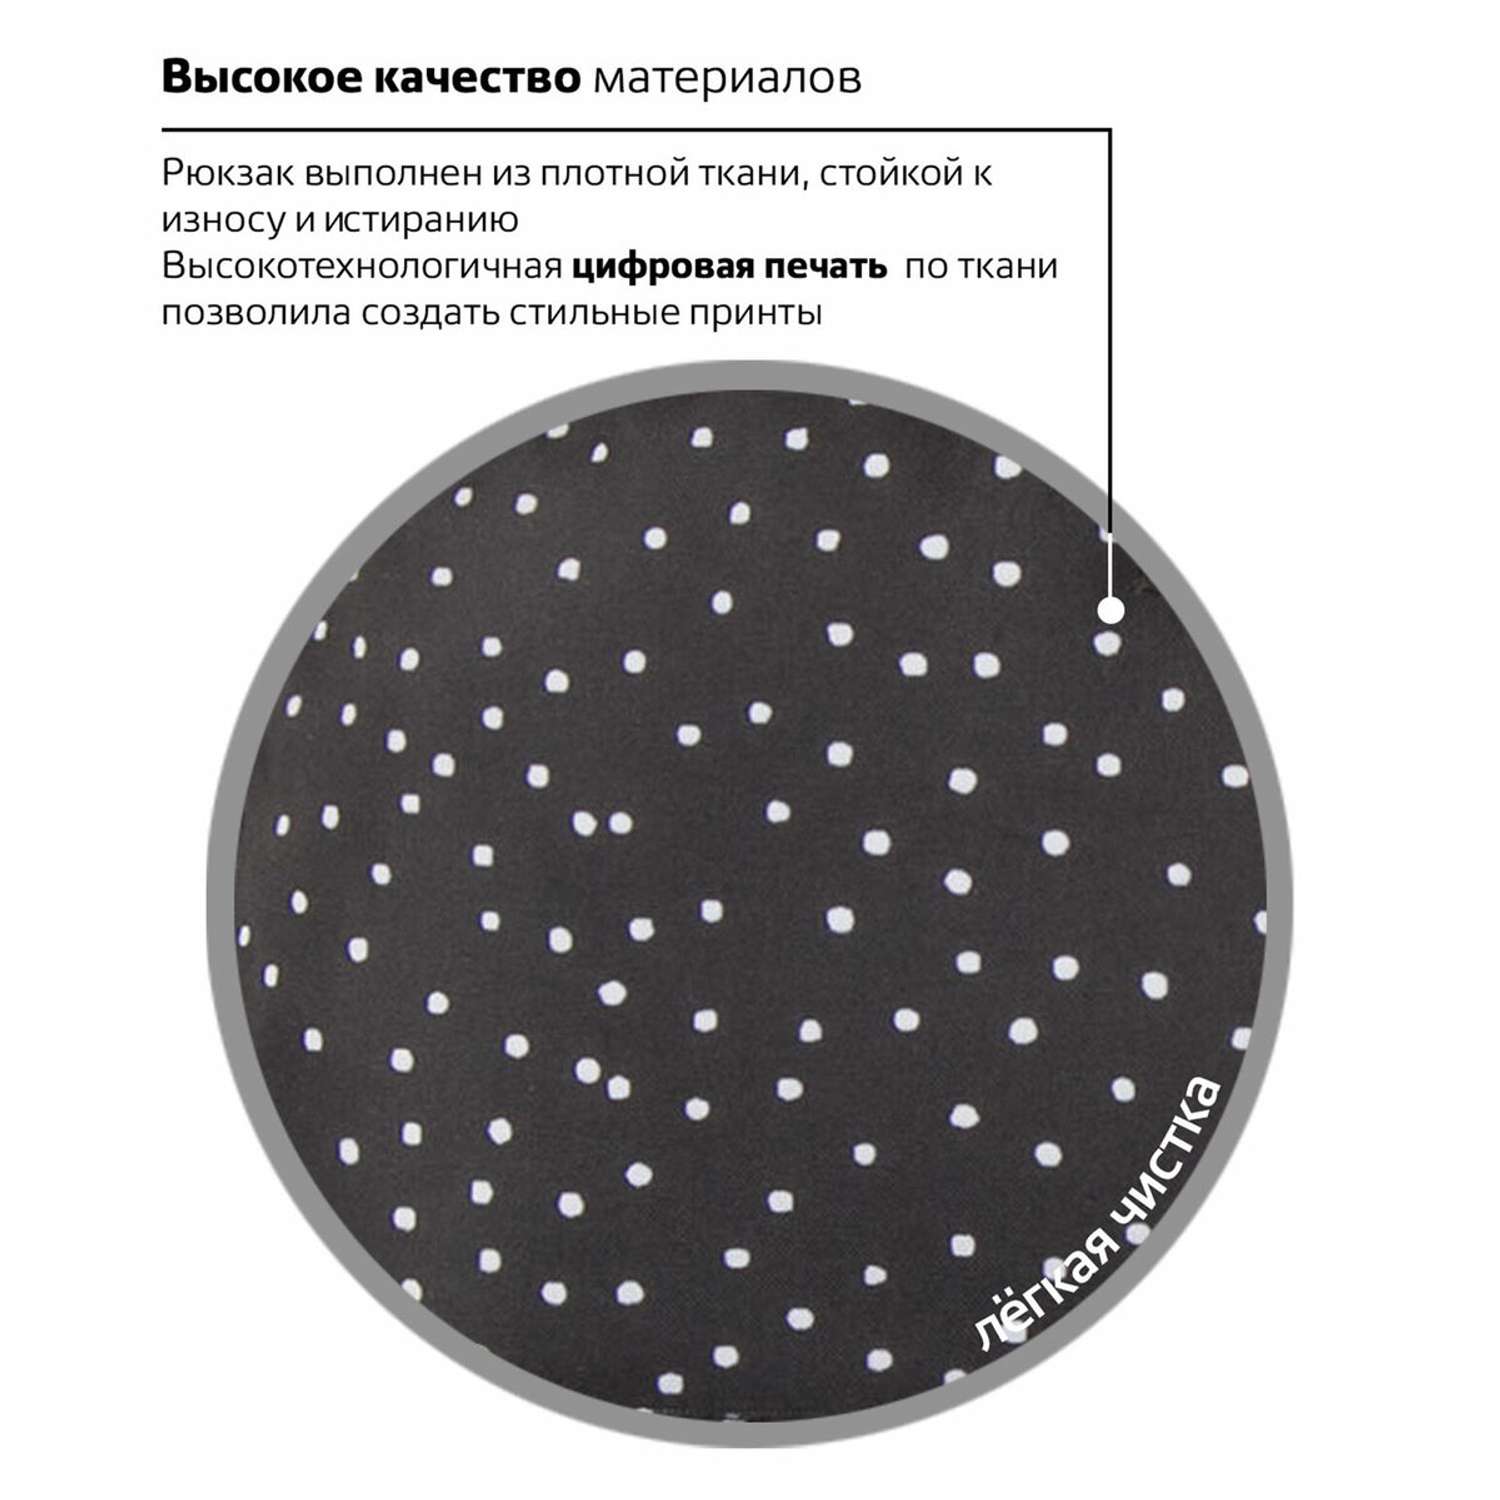 Рюкзак Brauberg универсальный сити-формат черный в горошек - фото 10